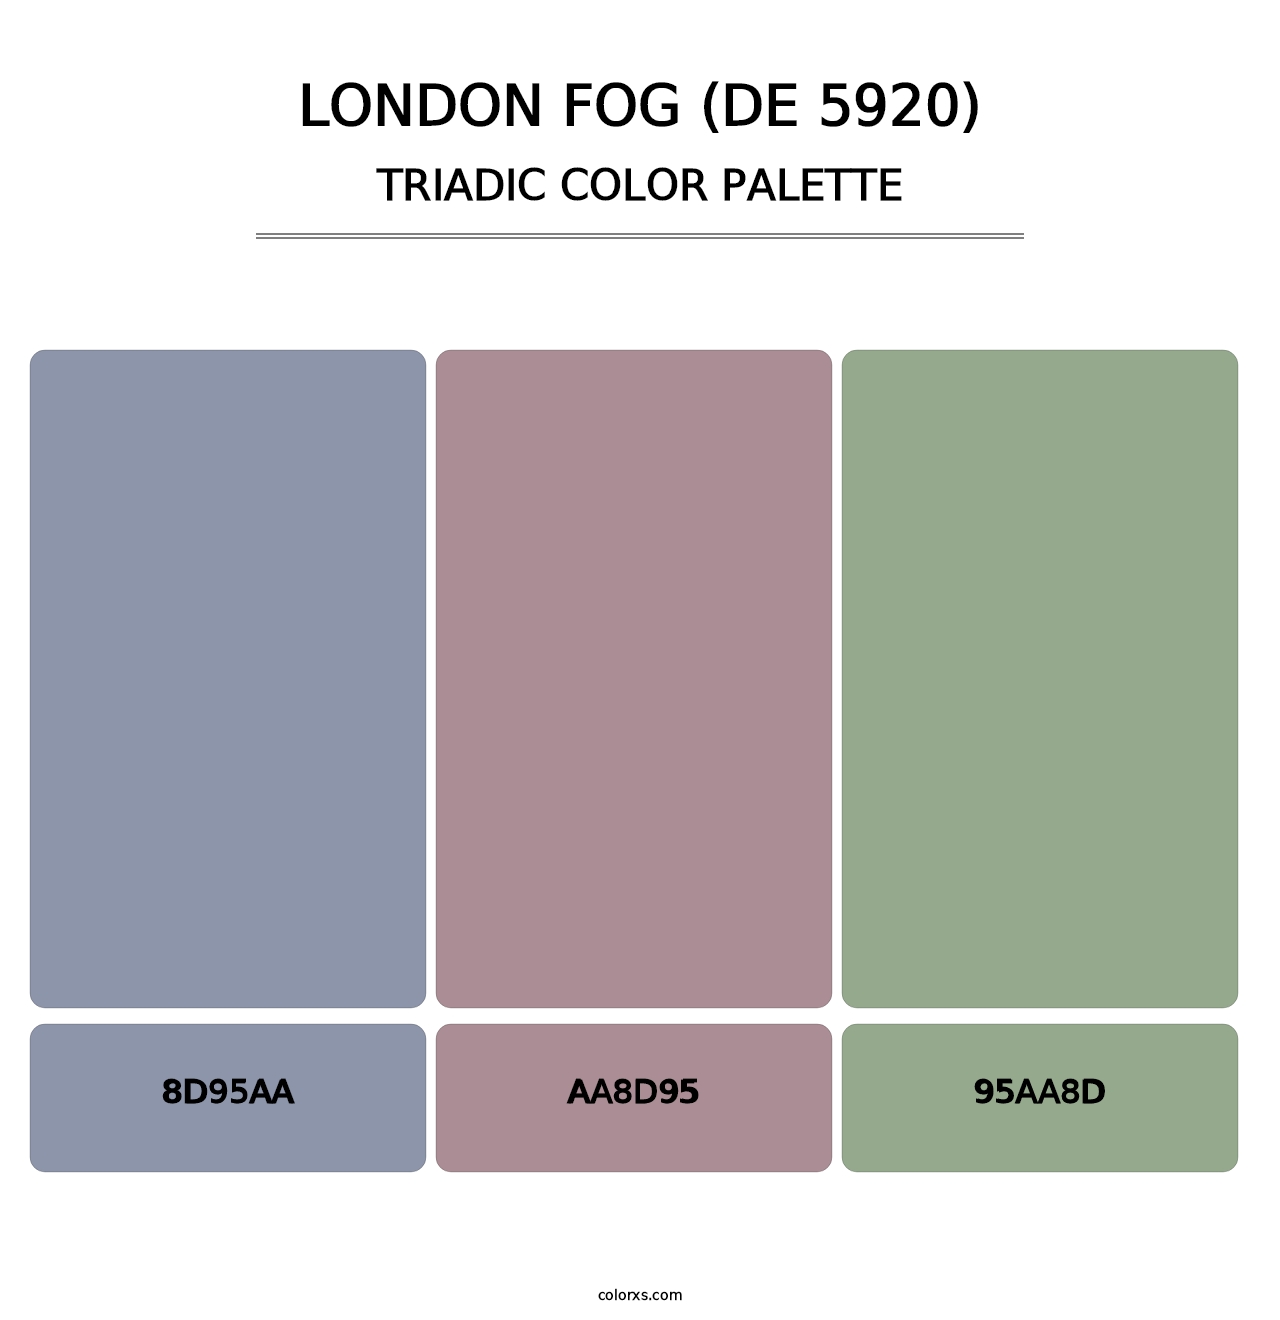 London Fog (DE 5920) - Triadic Color Palette